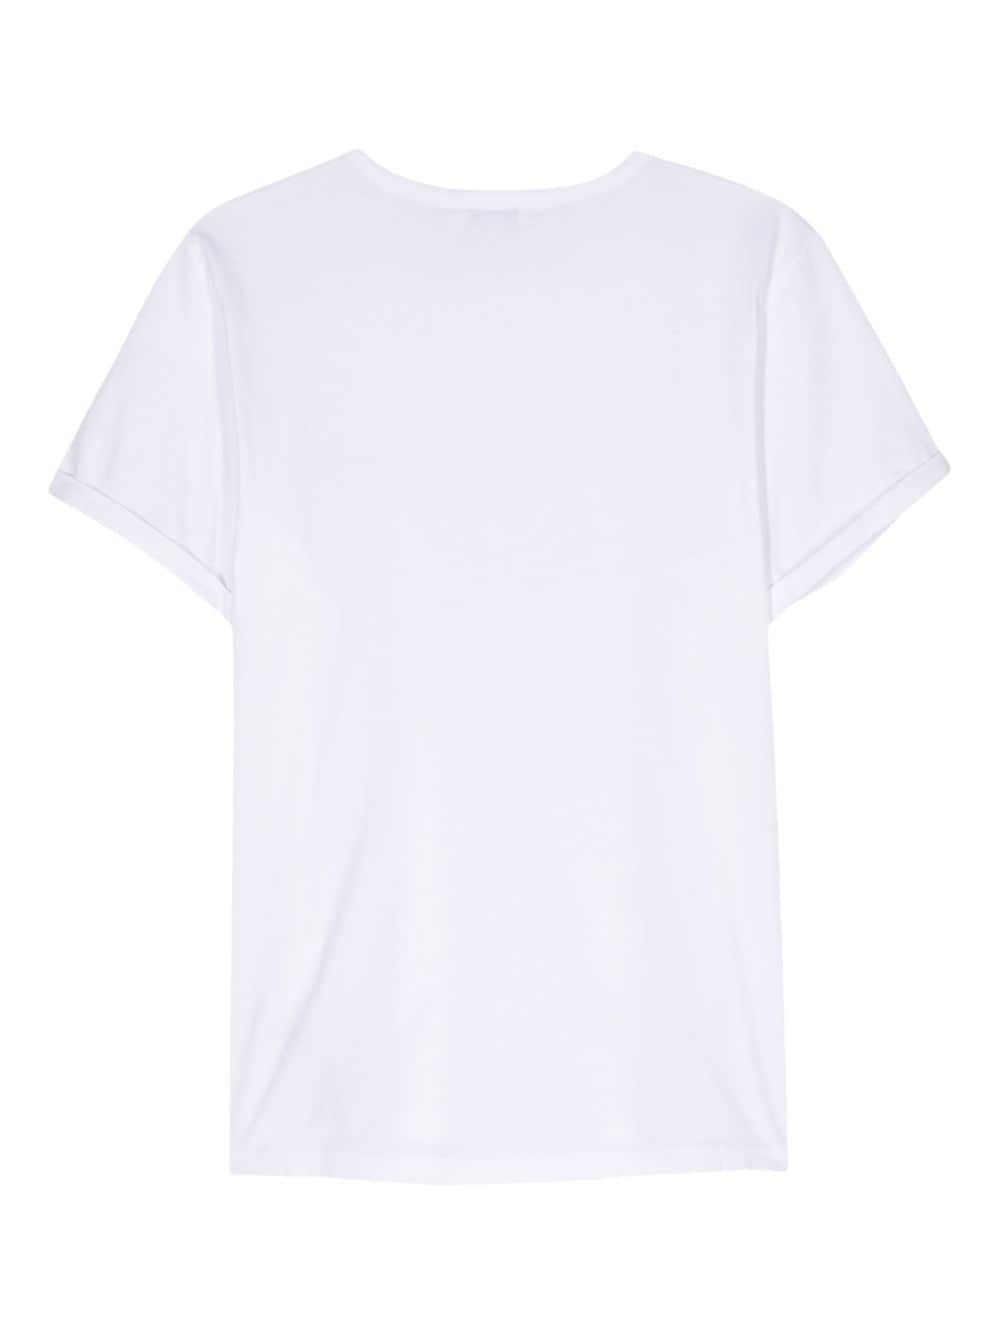 MAISON LABICHE MAISON LABICHE- Cotton T-shirt